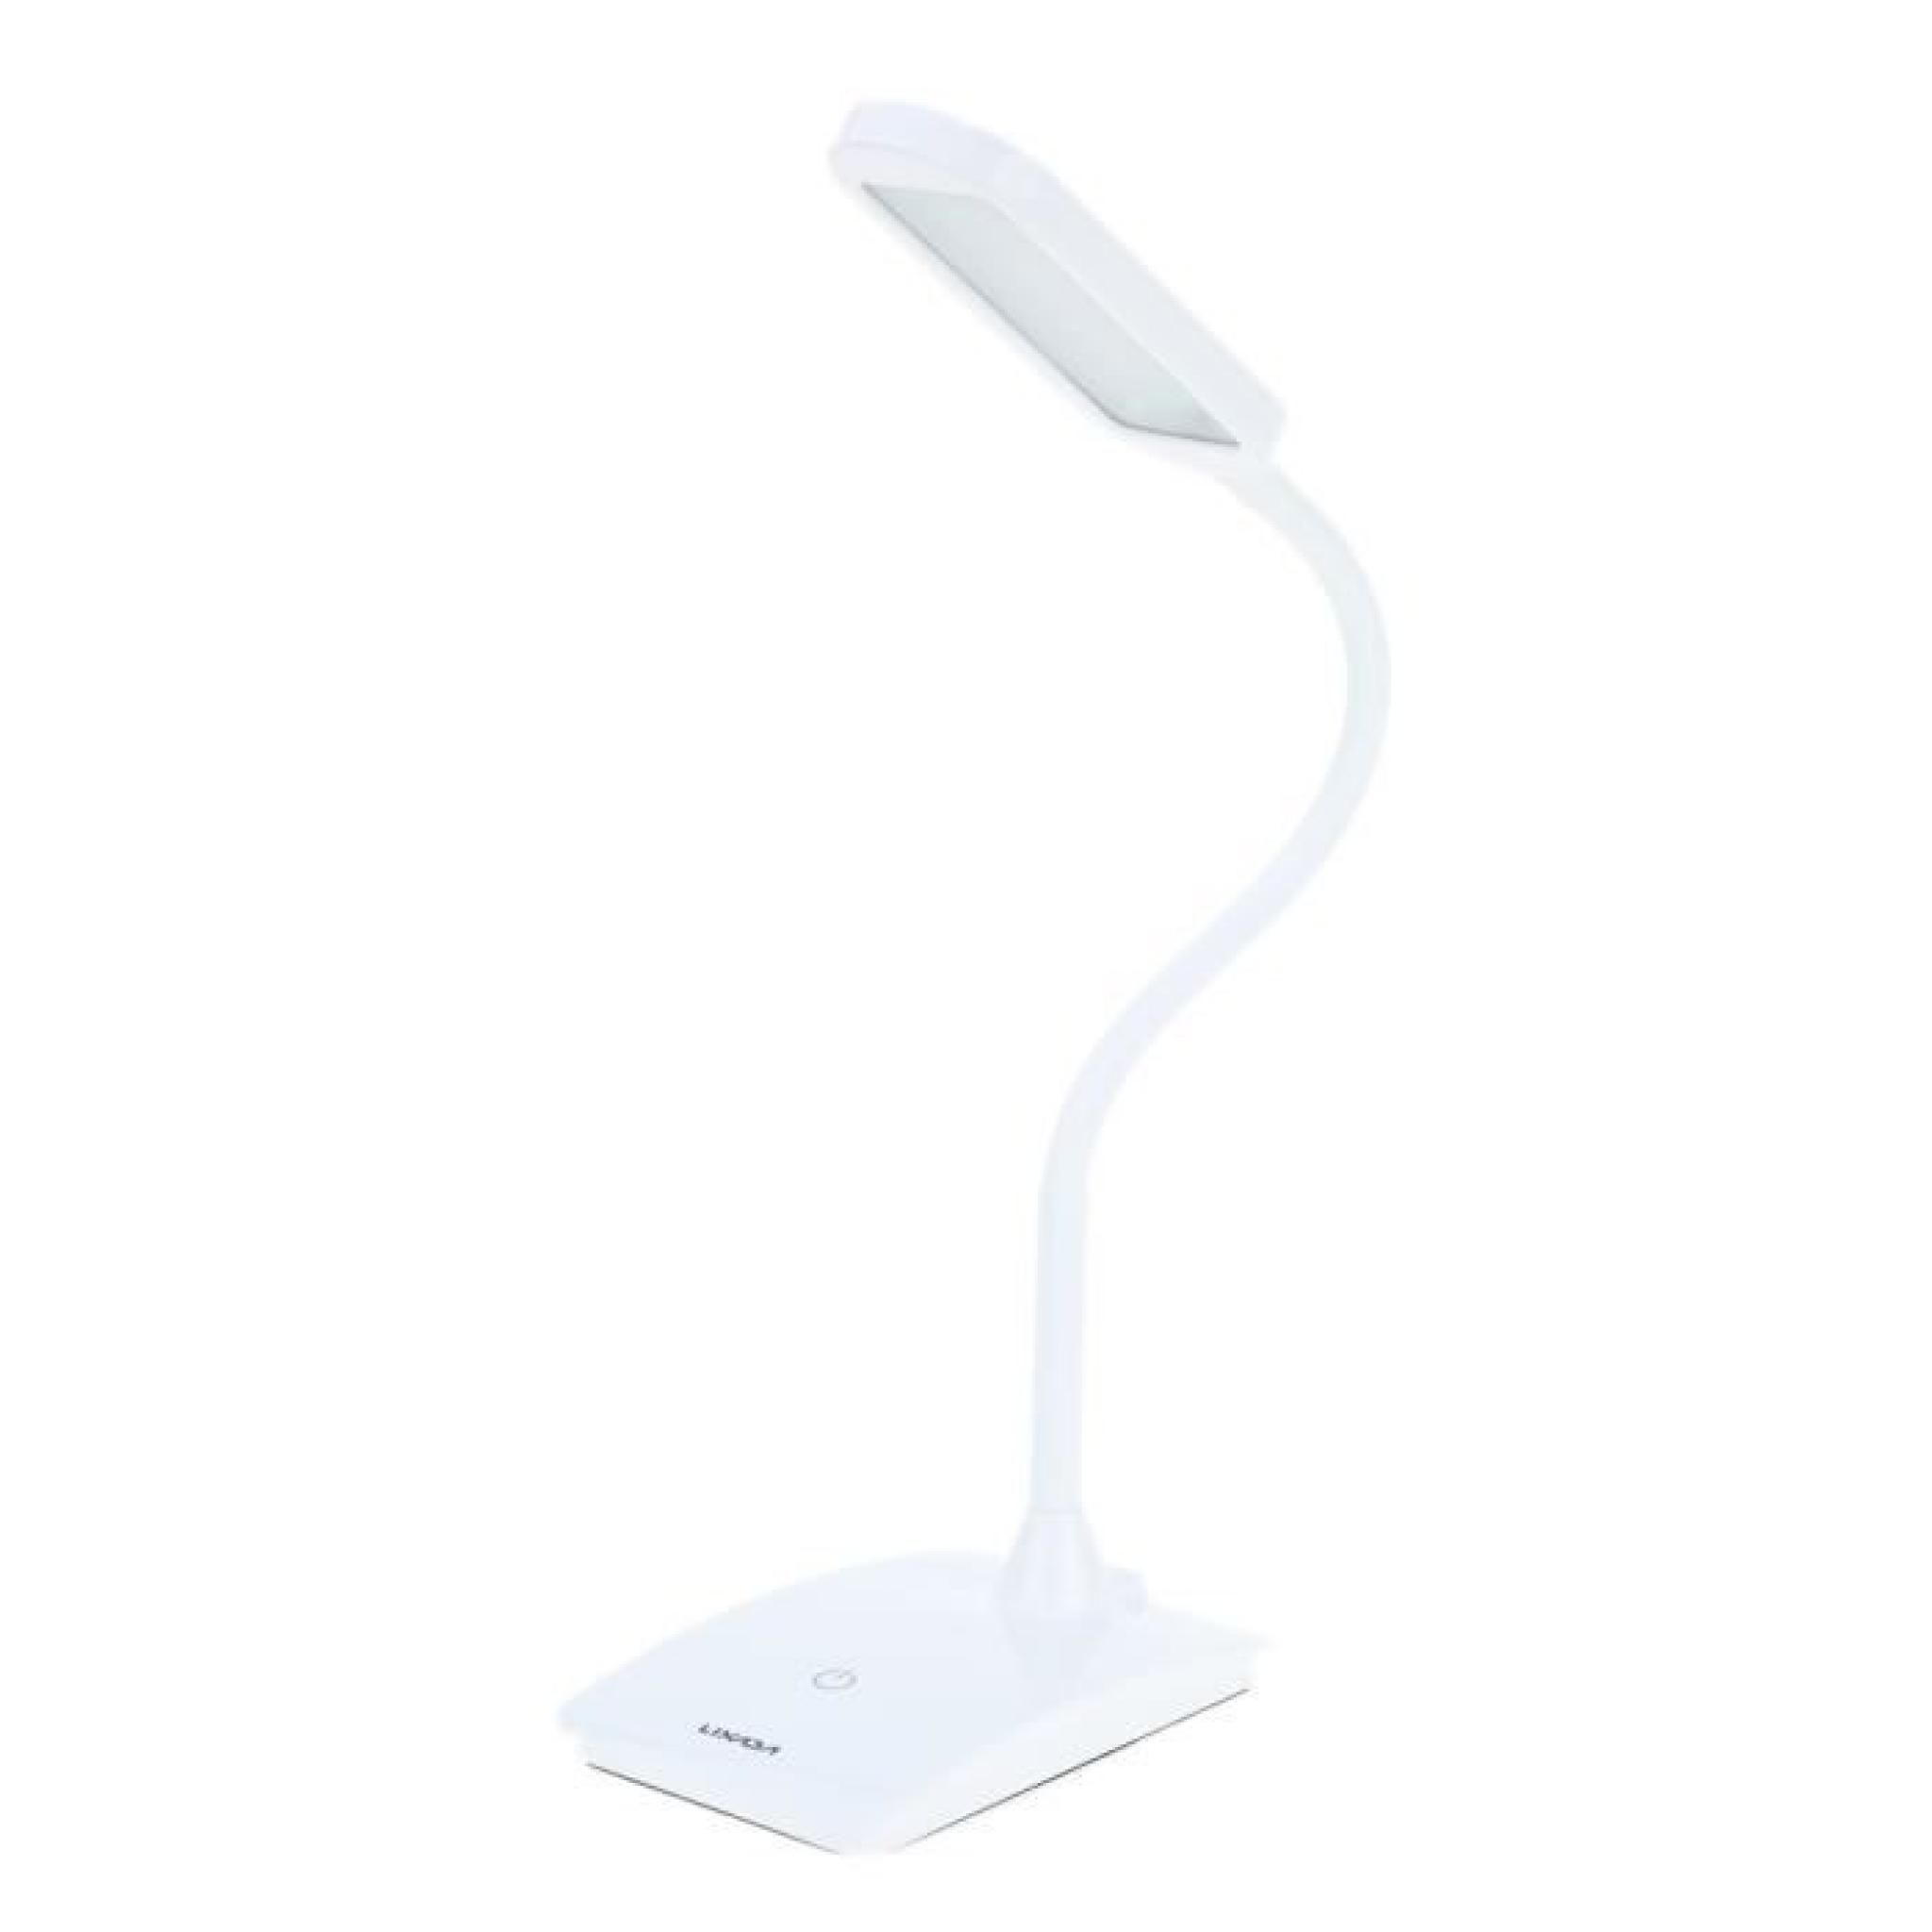  Lixada 6W rechargeable Commutateur tactile Lampe LED de lecture Protéger l'oeil luminosité réglable lampe de table pliable blanc